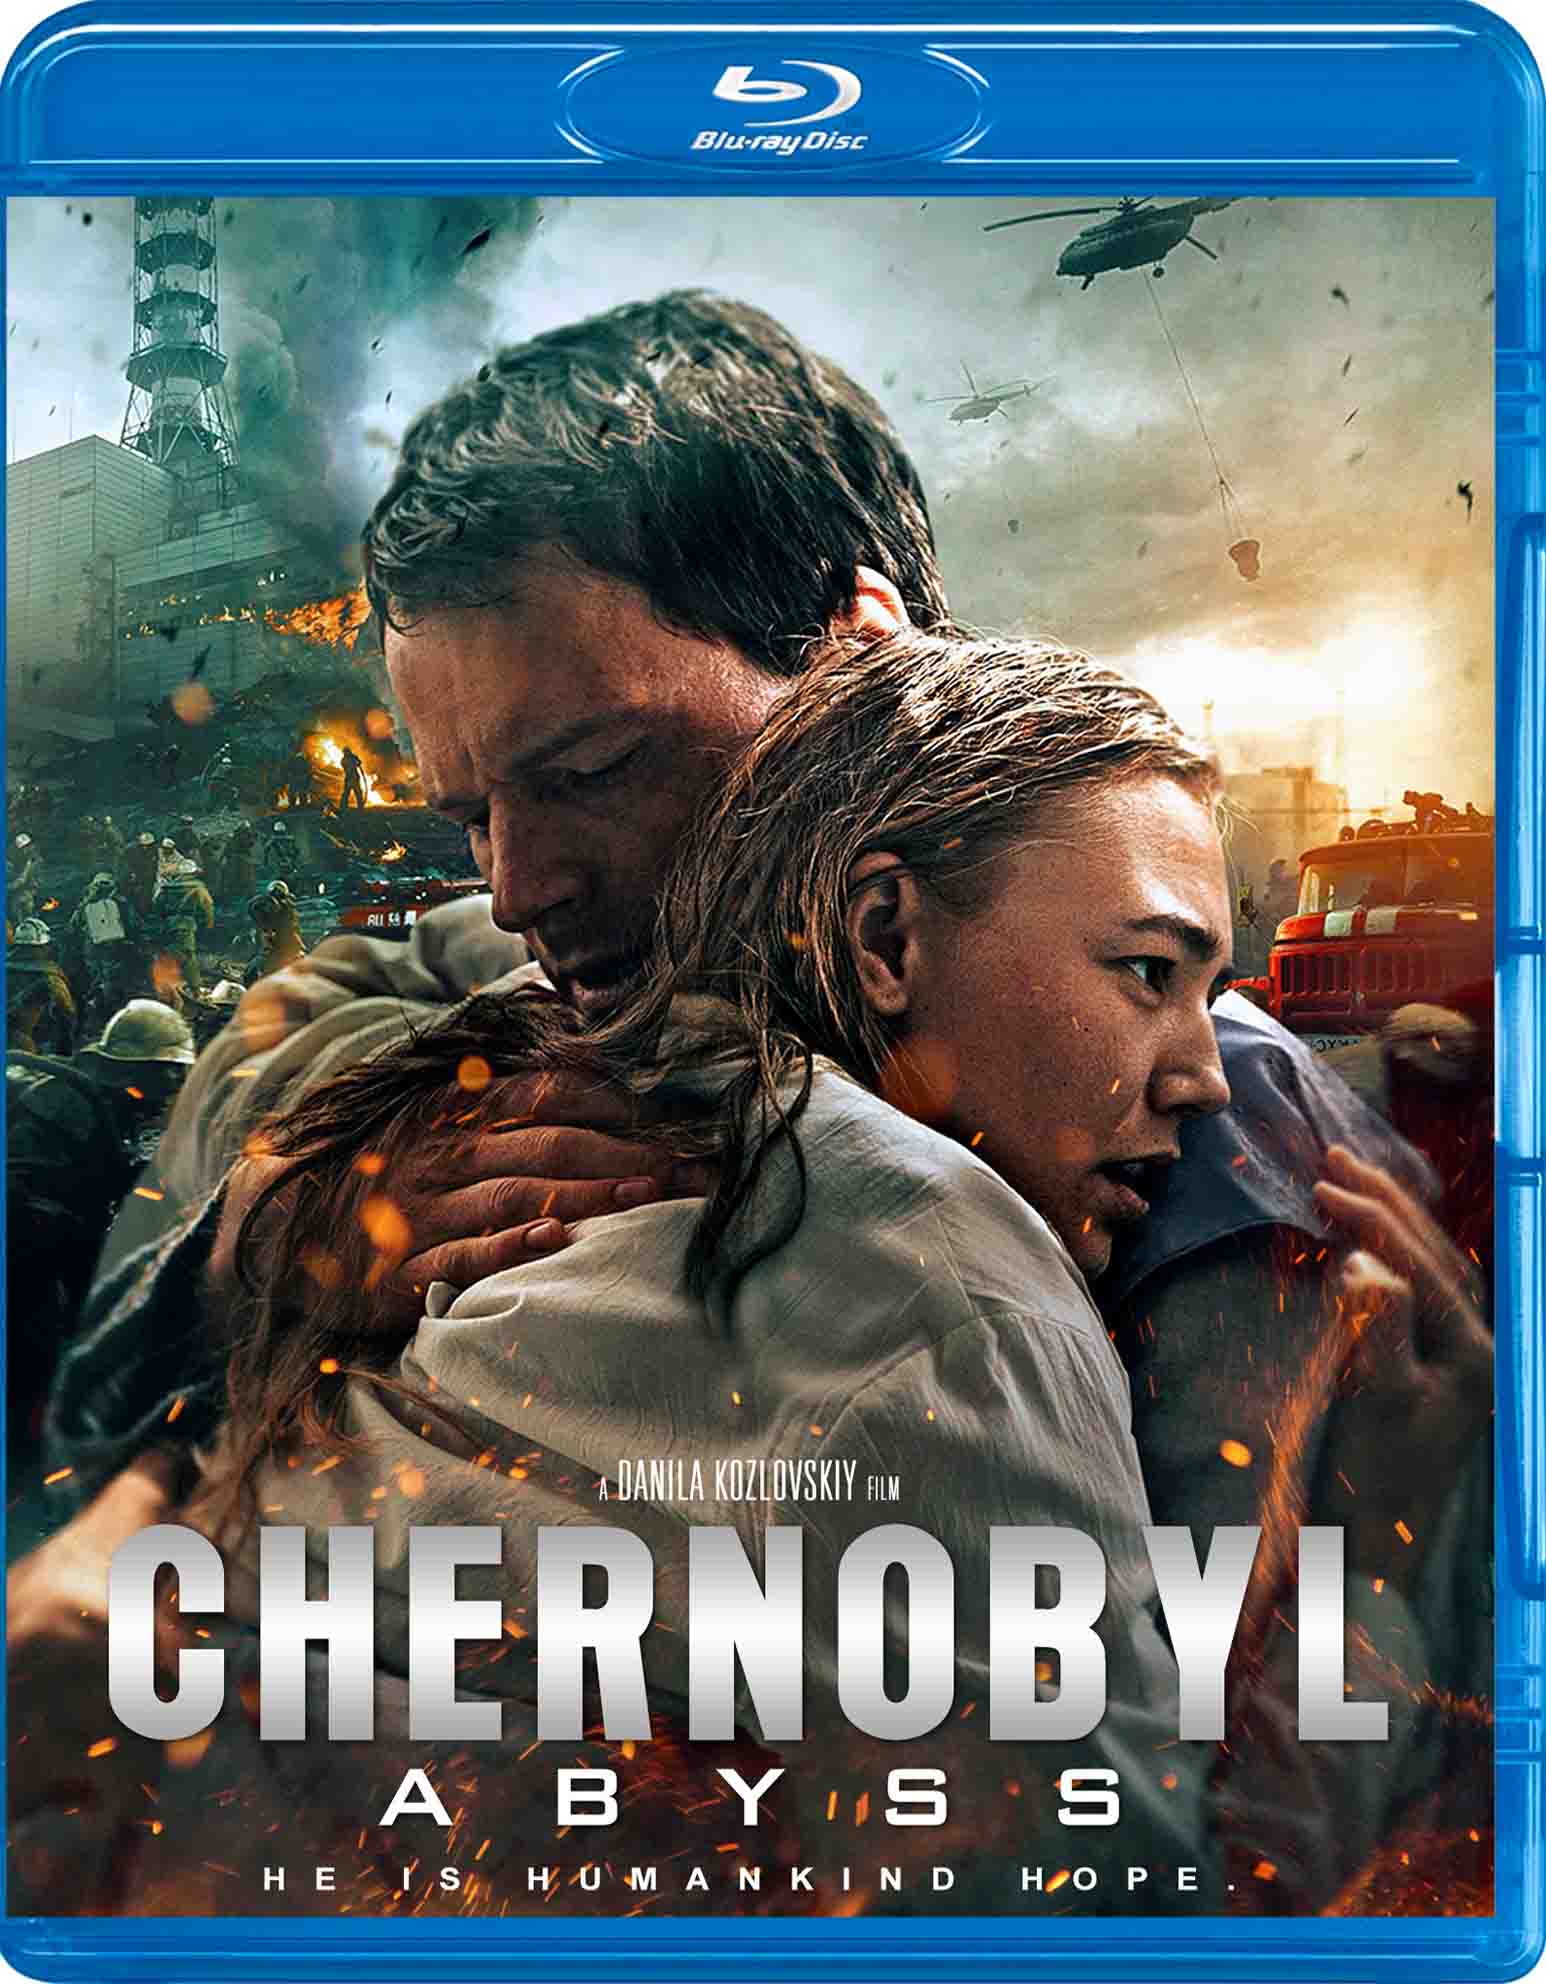 Chernobyl abyss